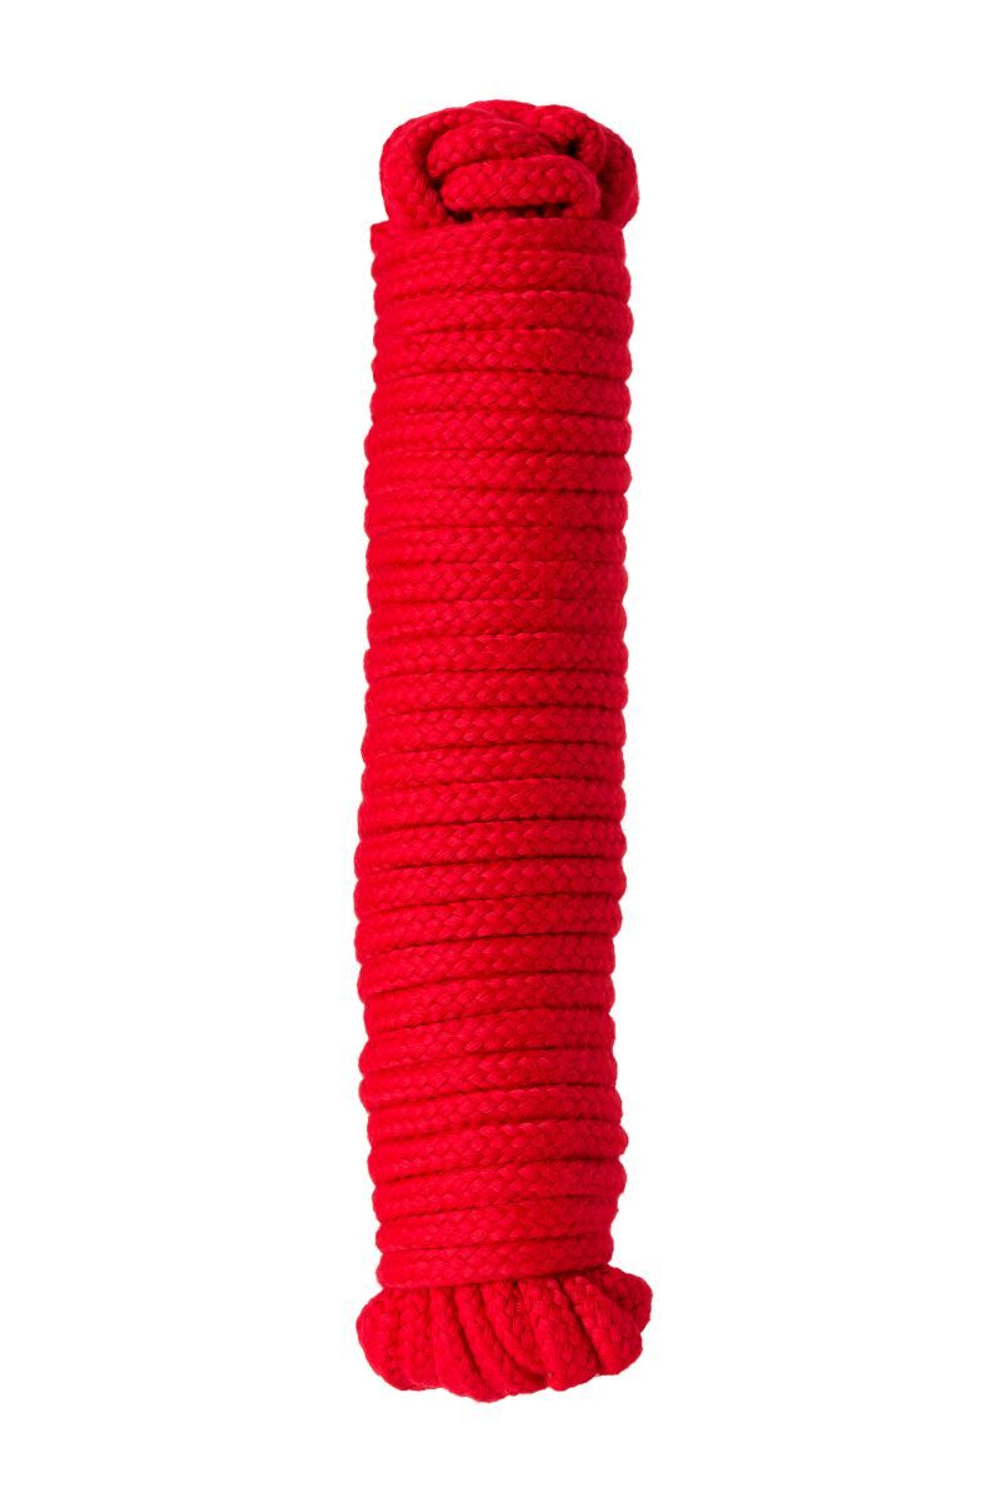 Красная текстильная веревка для бондажа - 1 м.